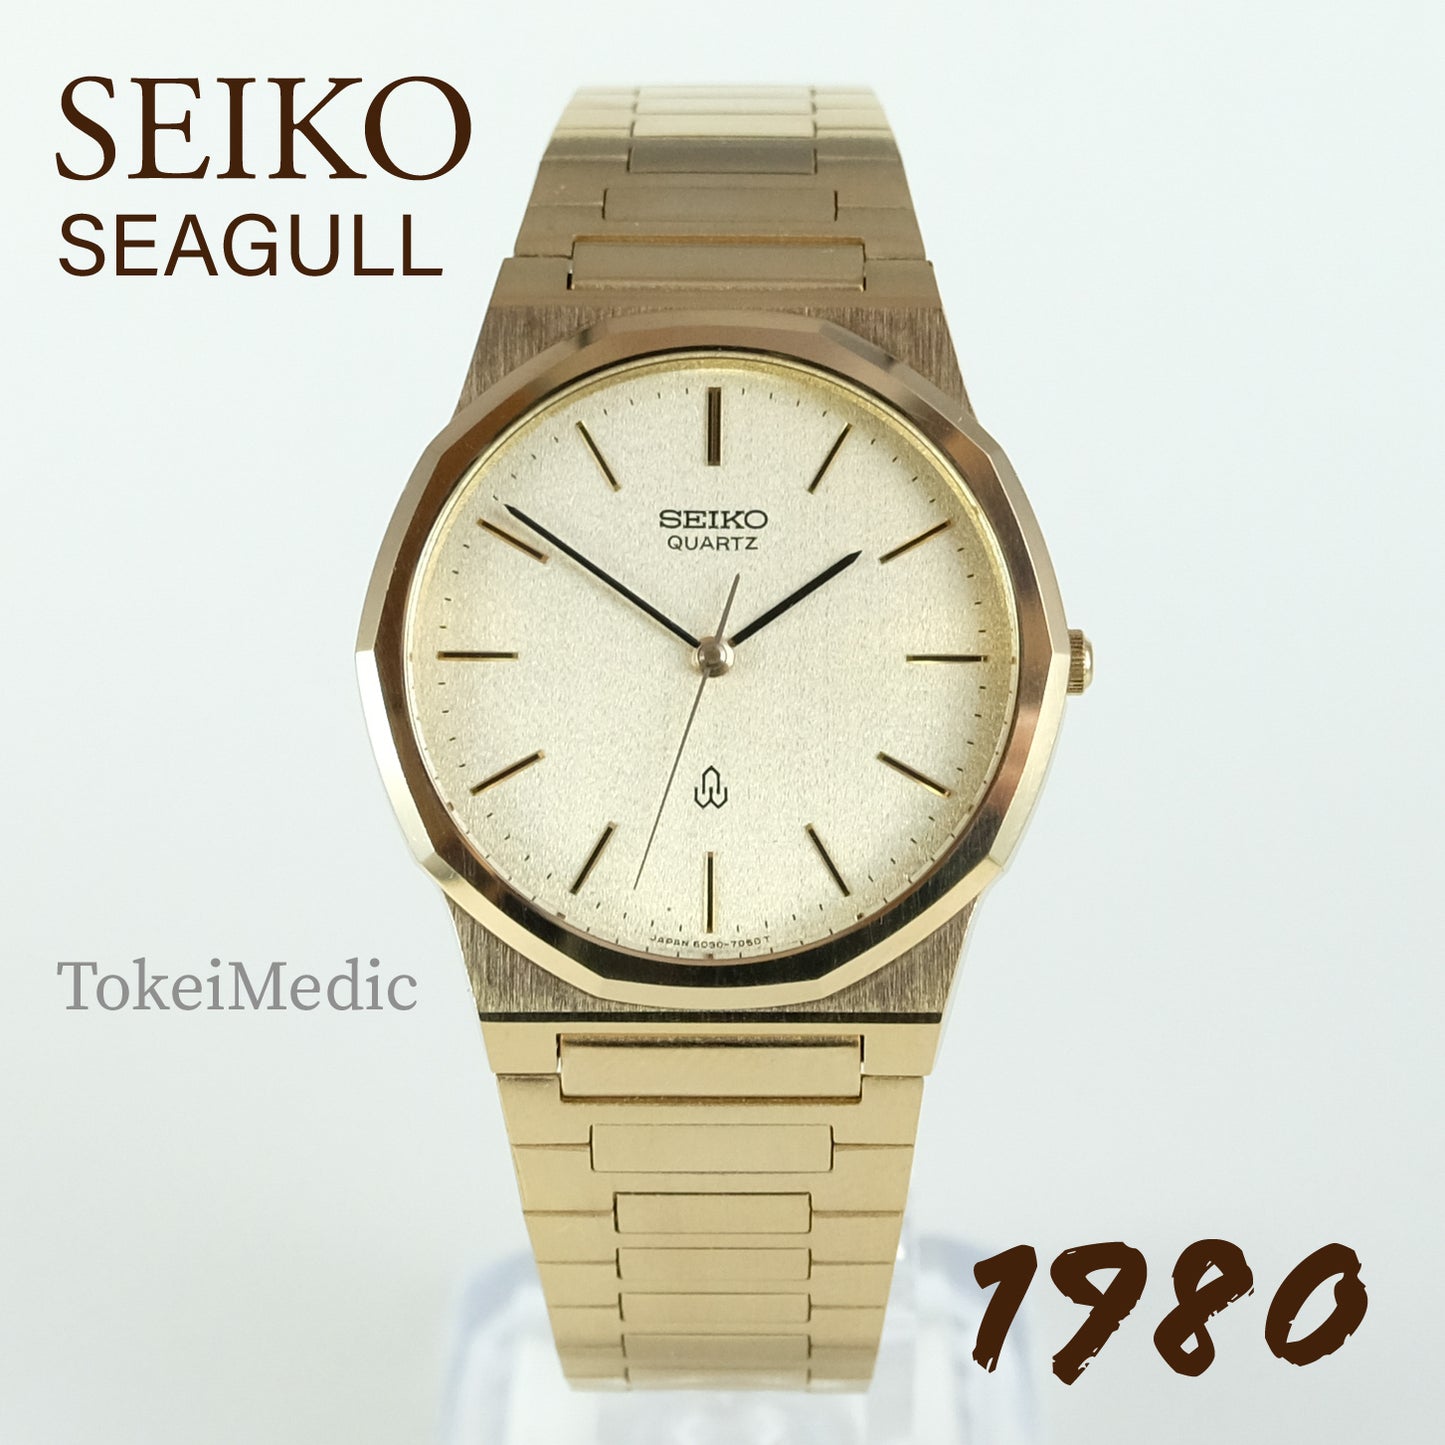 1980 Seiko Seagull 6030-7060